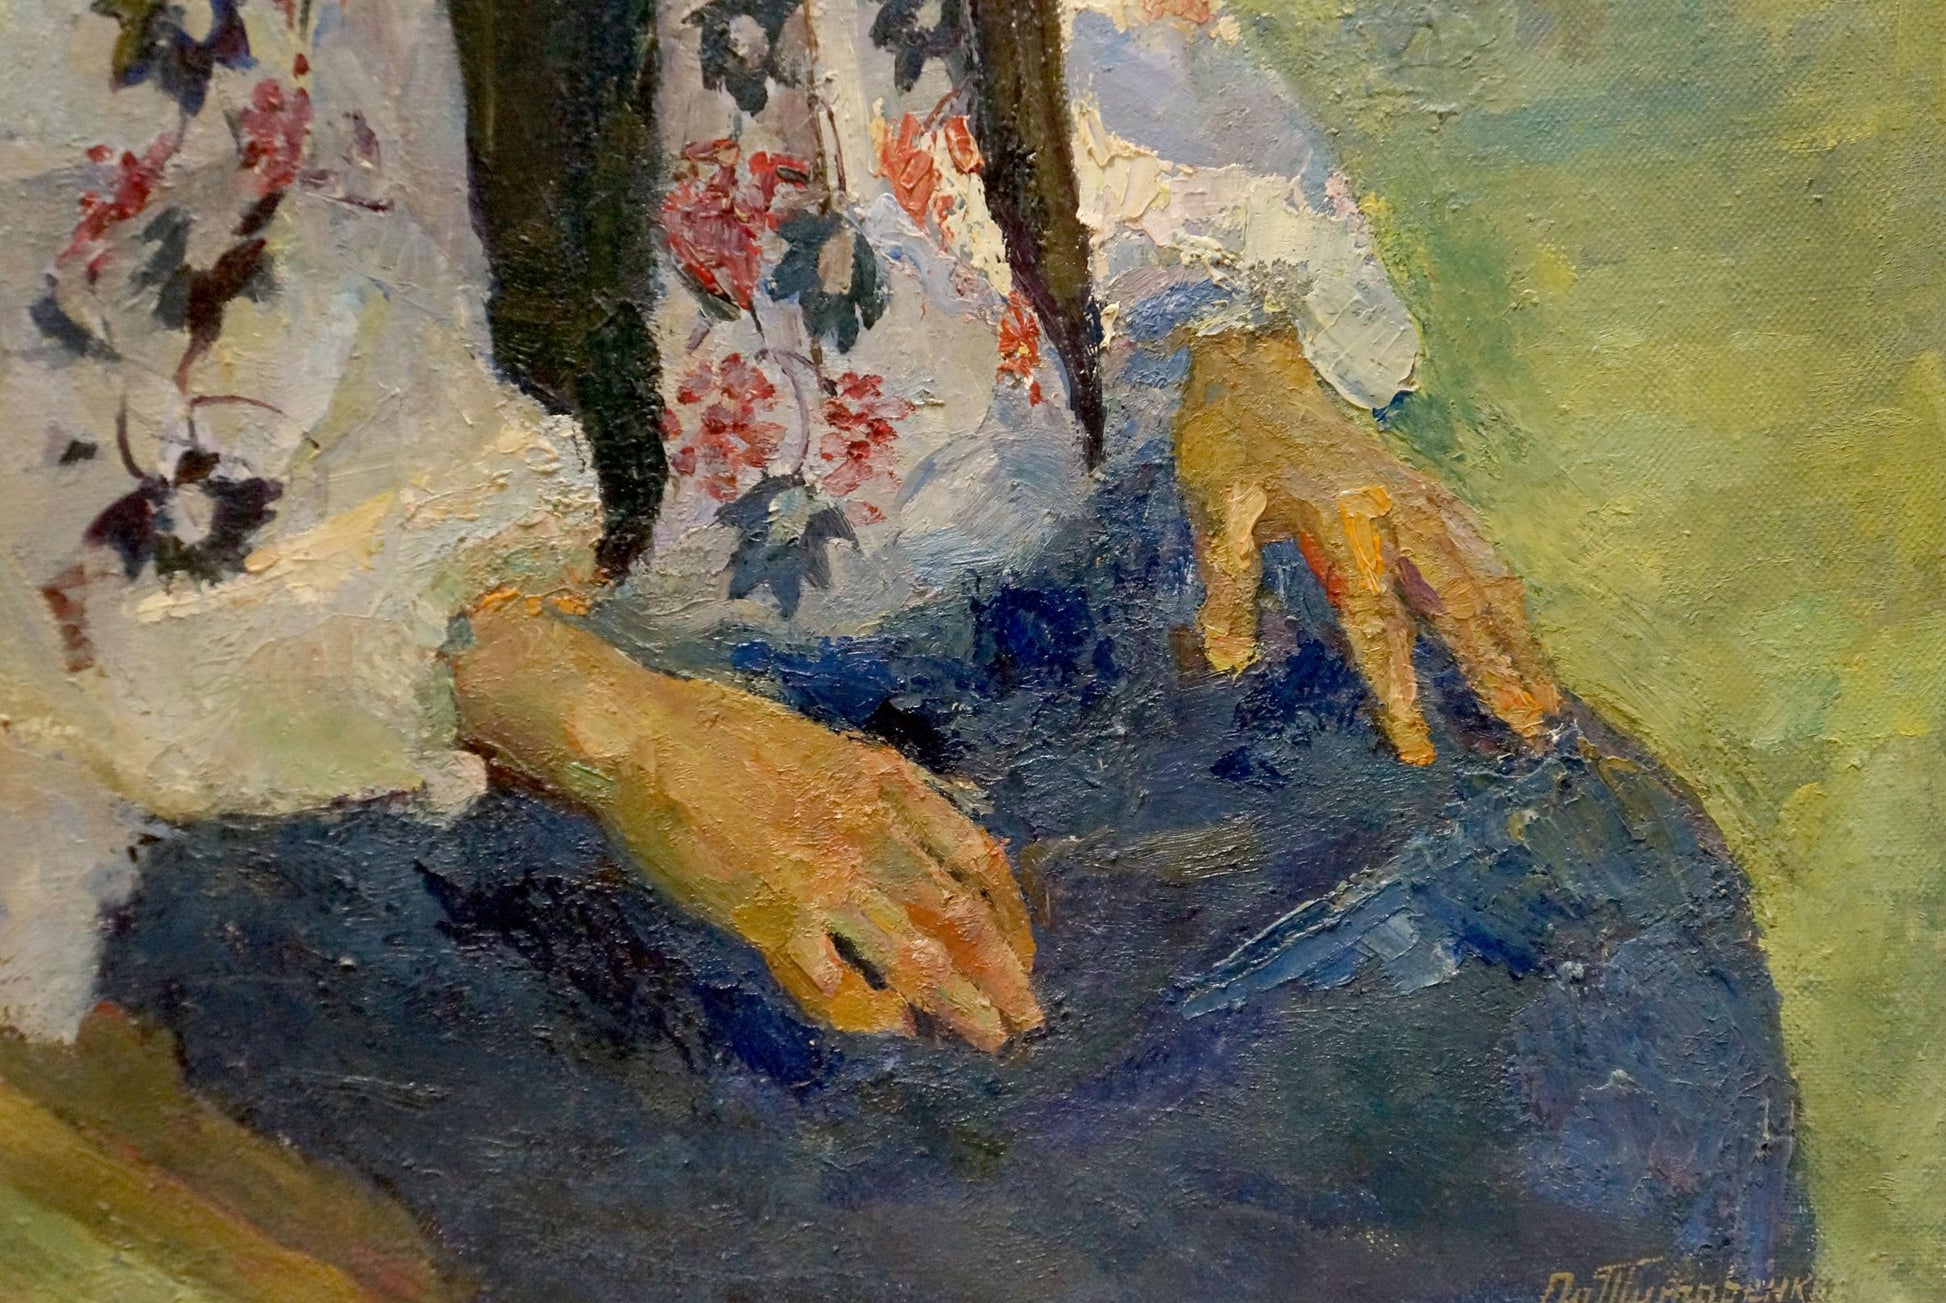 Within the oil painting, Odarka Anatoliivna Tytarenko illustrates the character of a grandmother